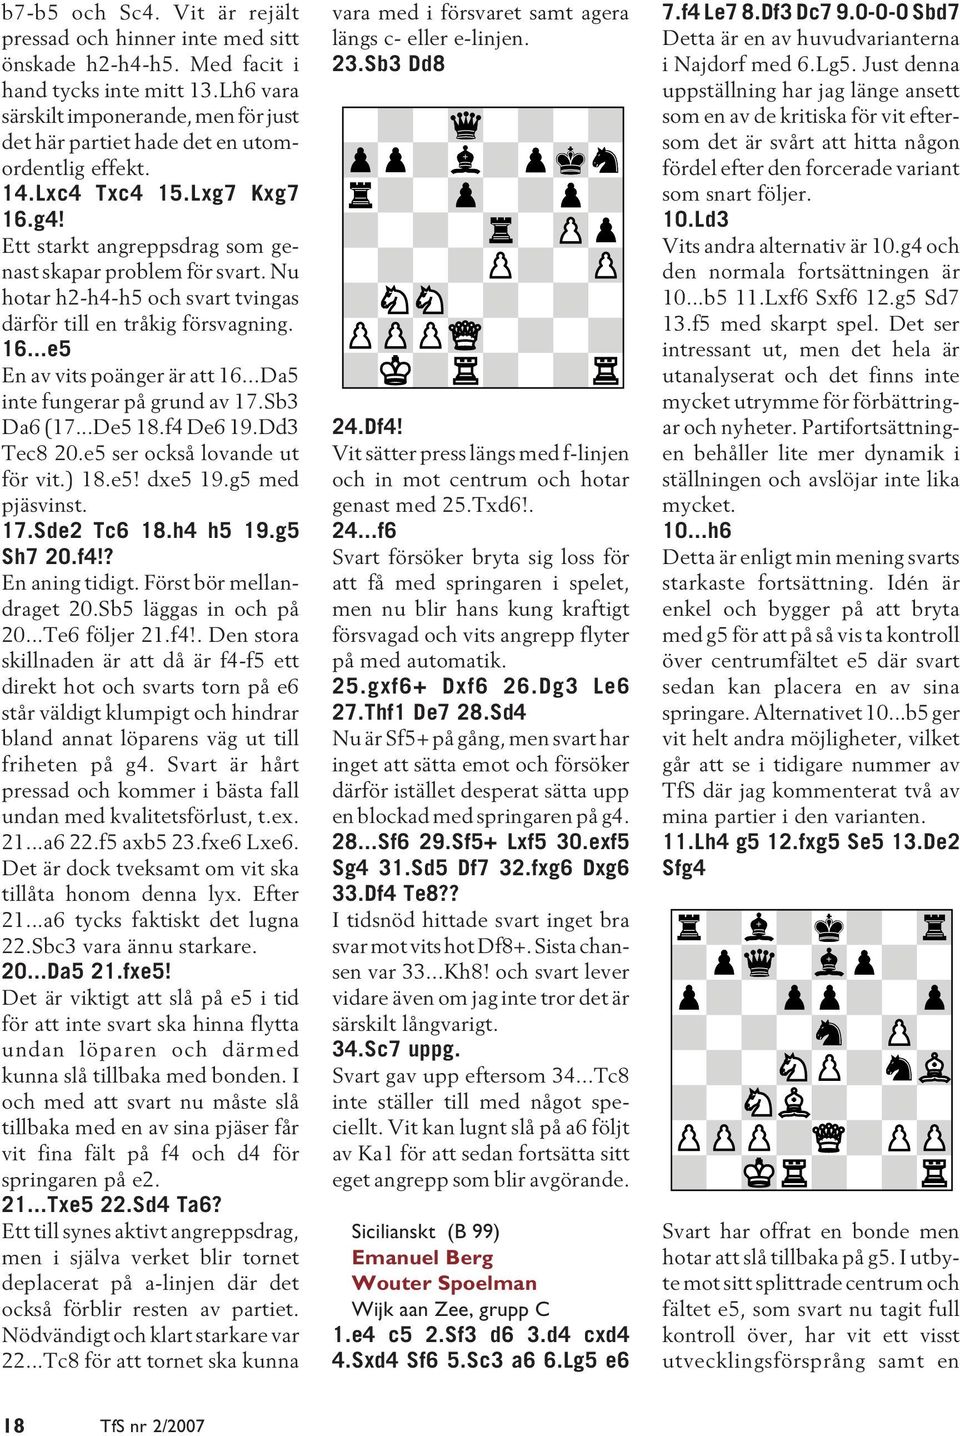 Nu hotar h2-h4-h5 och svart tvingas därför till en tråkig försvagning. 16...e5 En av vits poänger är att 16...Da5 inte fungerar på grund av 17.Sb3 Da6 (17...De5 18.f4 De6 19.Dd3 Tec8 20.